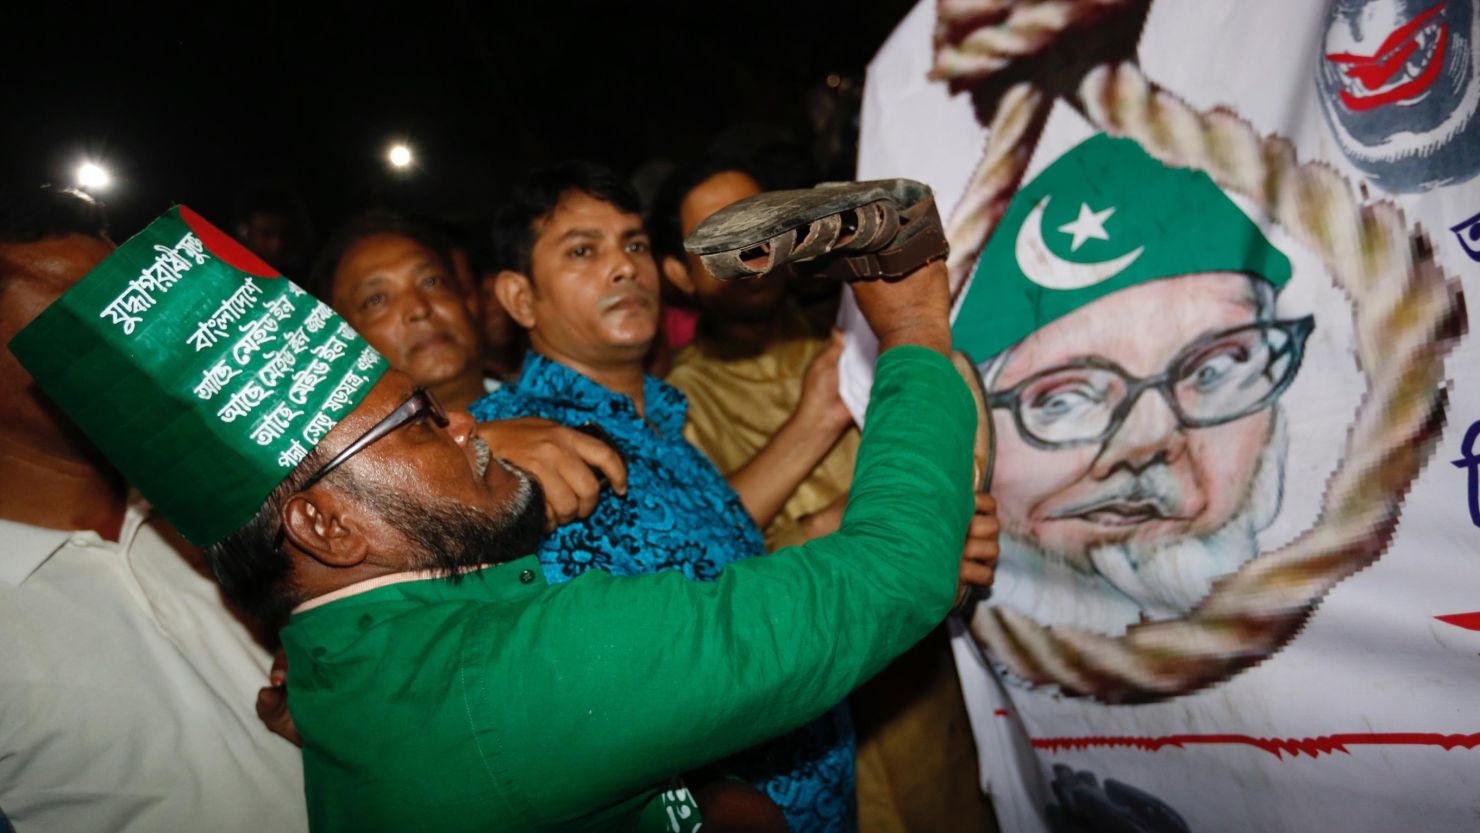 A Bangladeshi man throws a shoe at a poster of Motiur Rahman Nizami following the Jamaat-e-Islami party leader's execution.